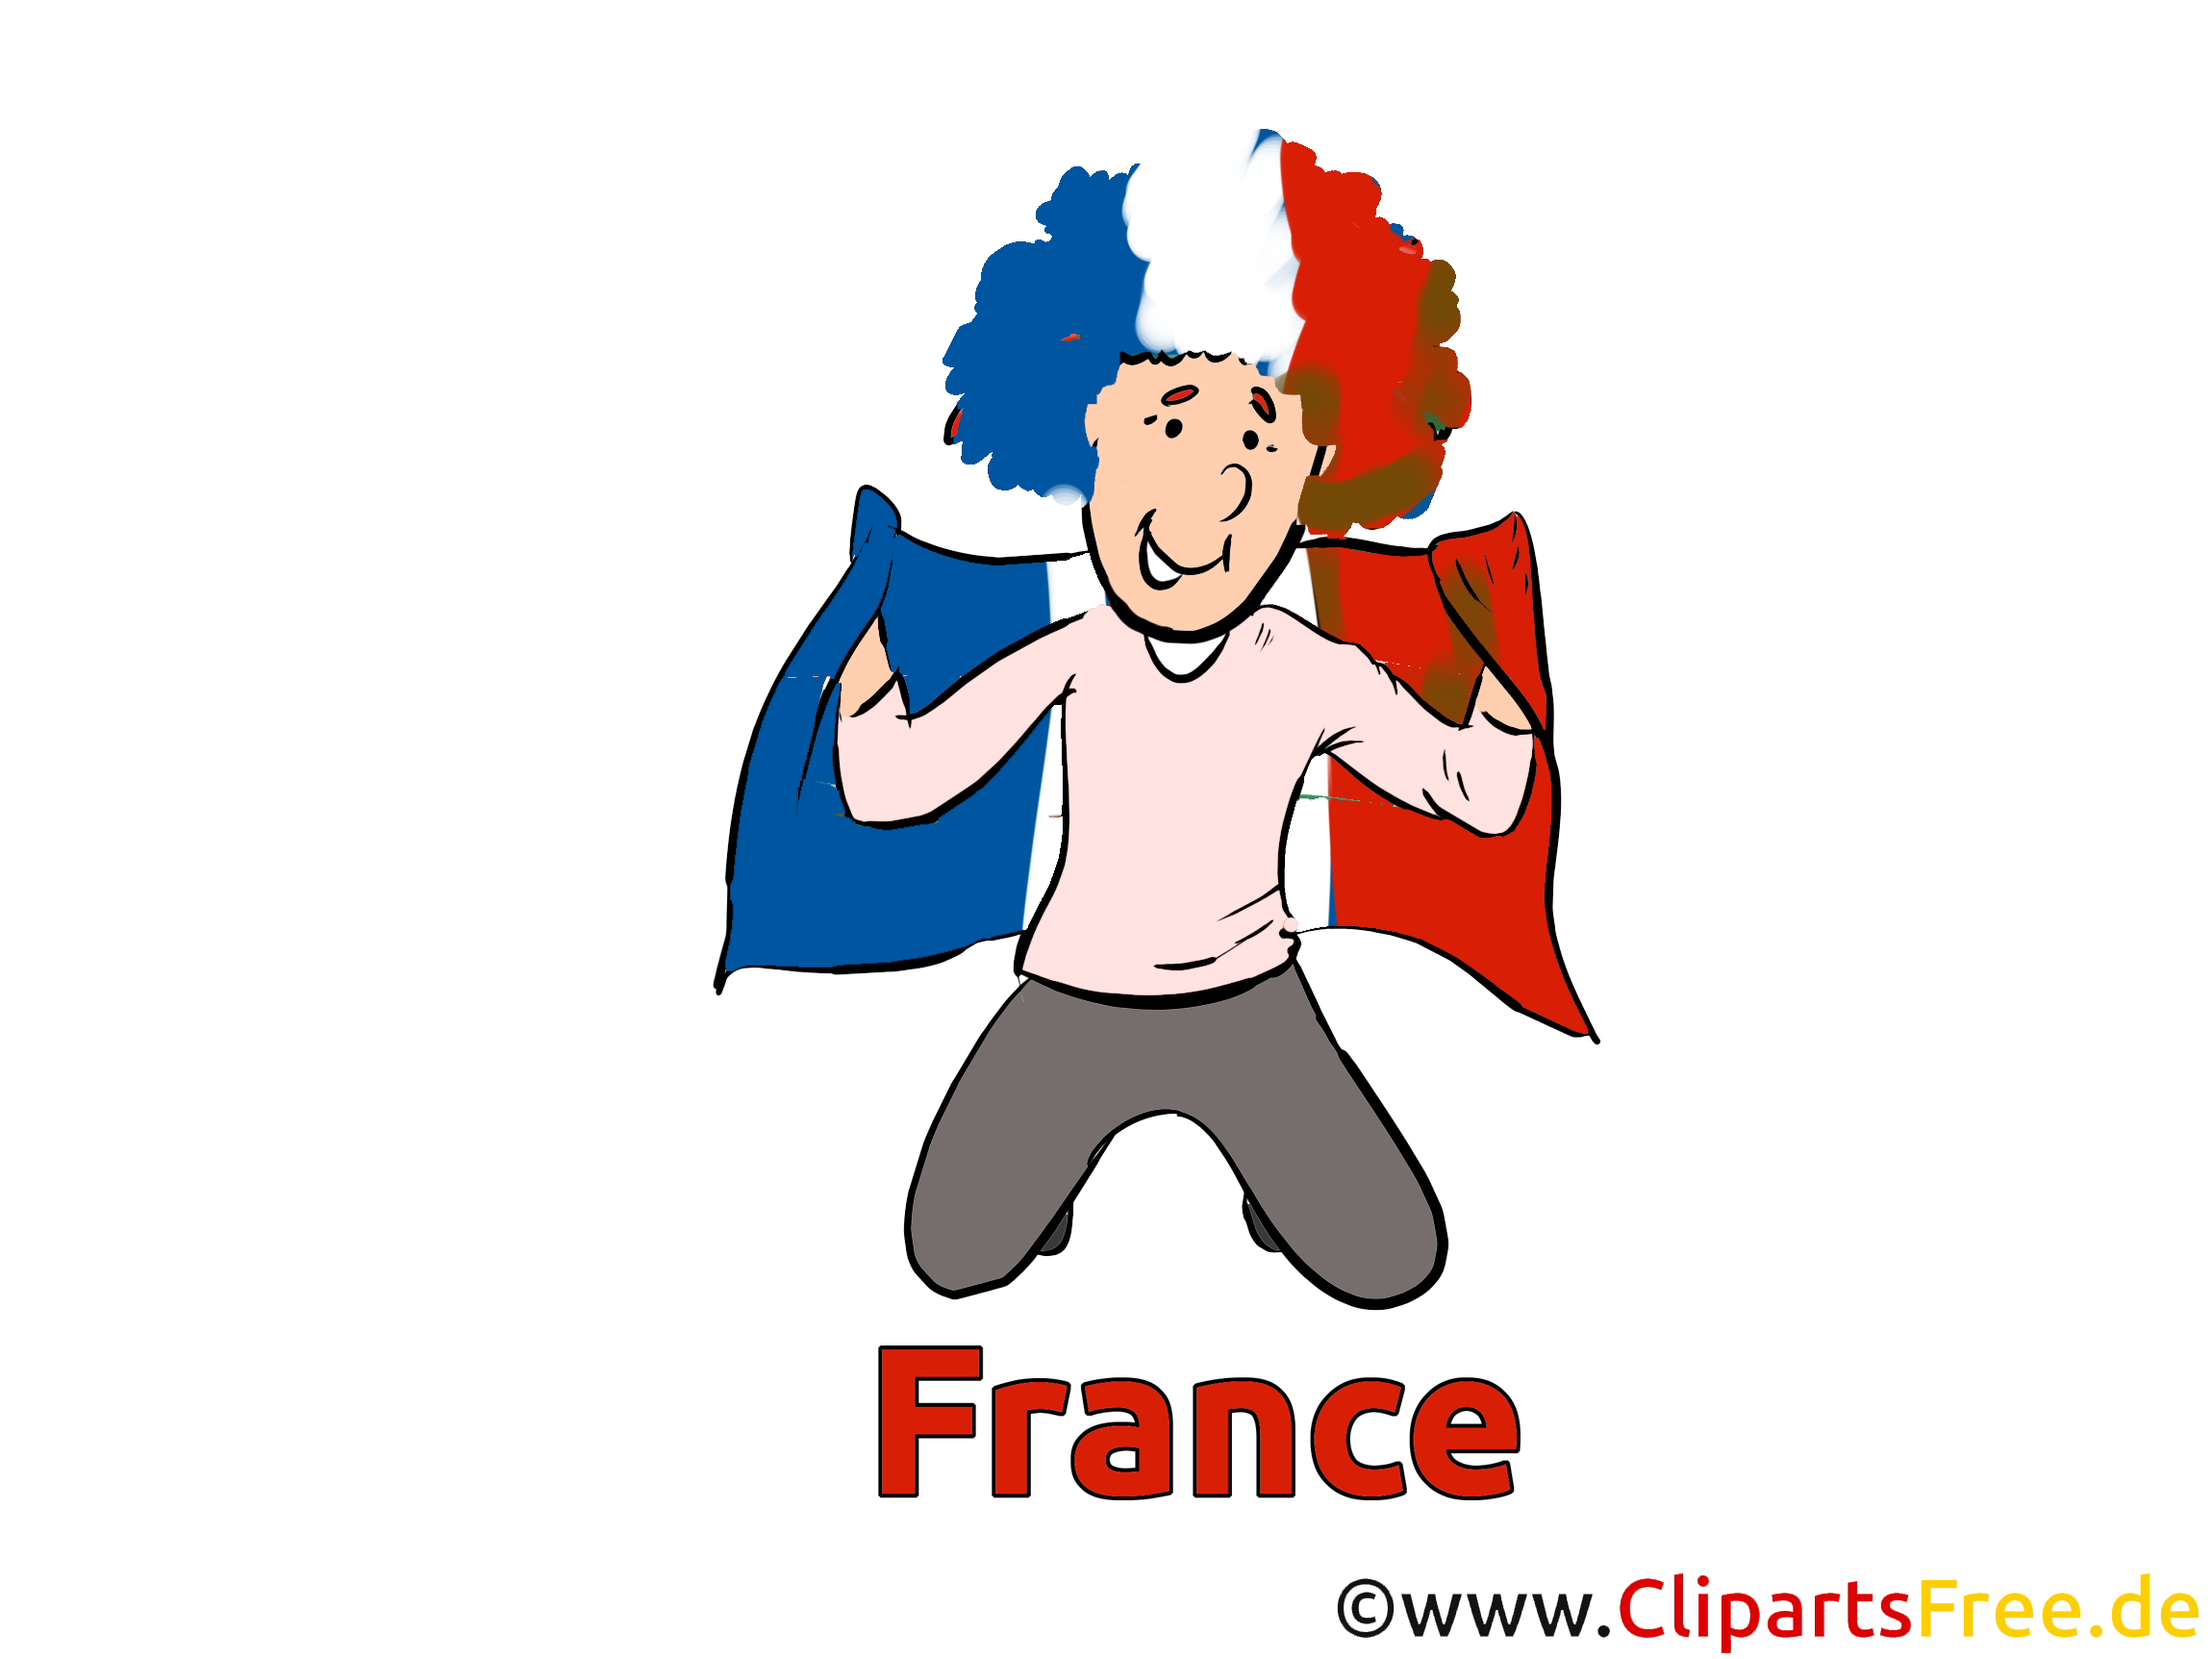 Clipart Image France Sport télécharger gratuitement